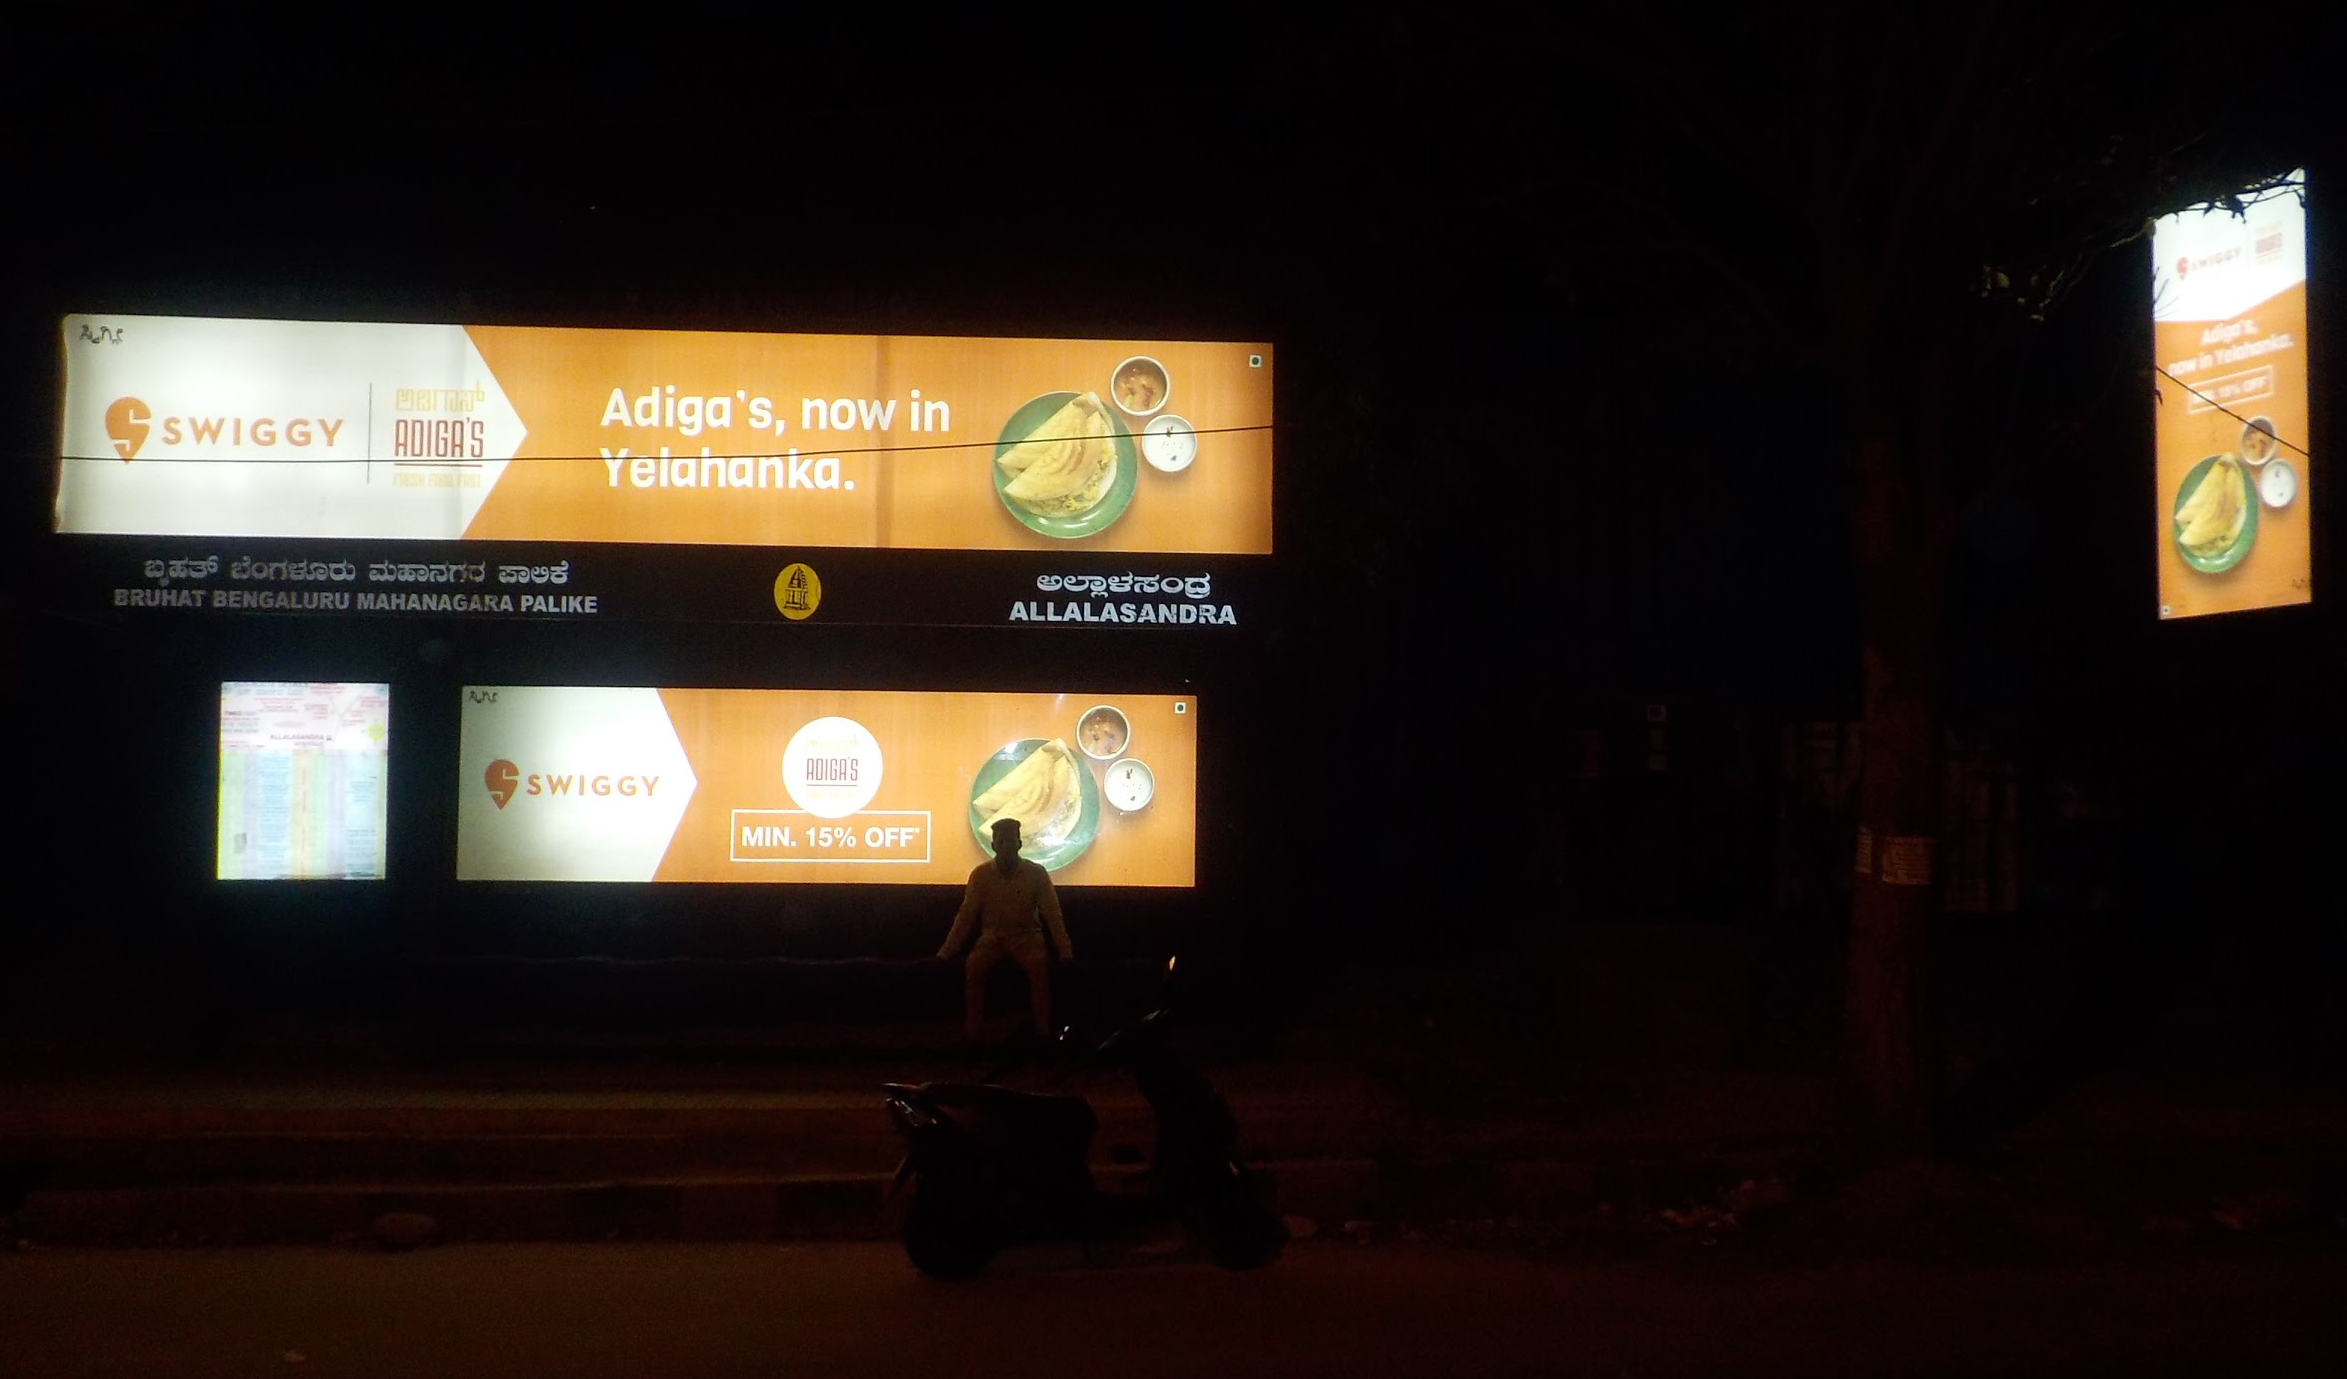 outdoor advertising for Swiggy in Bengaluru